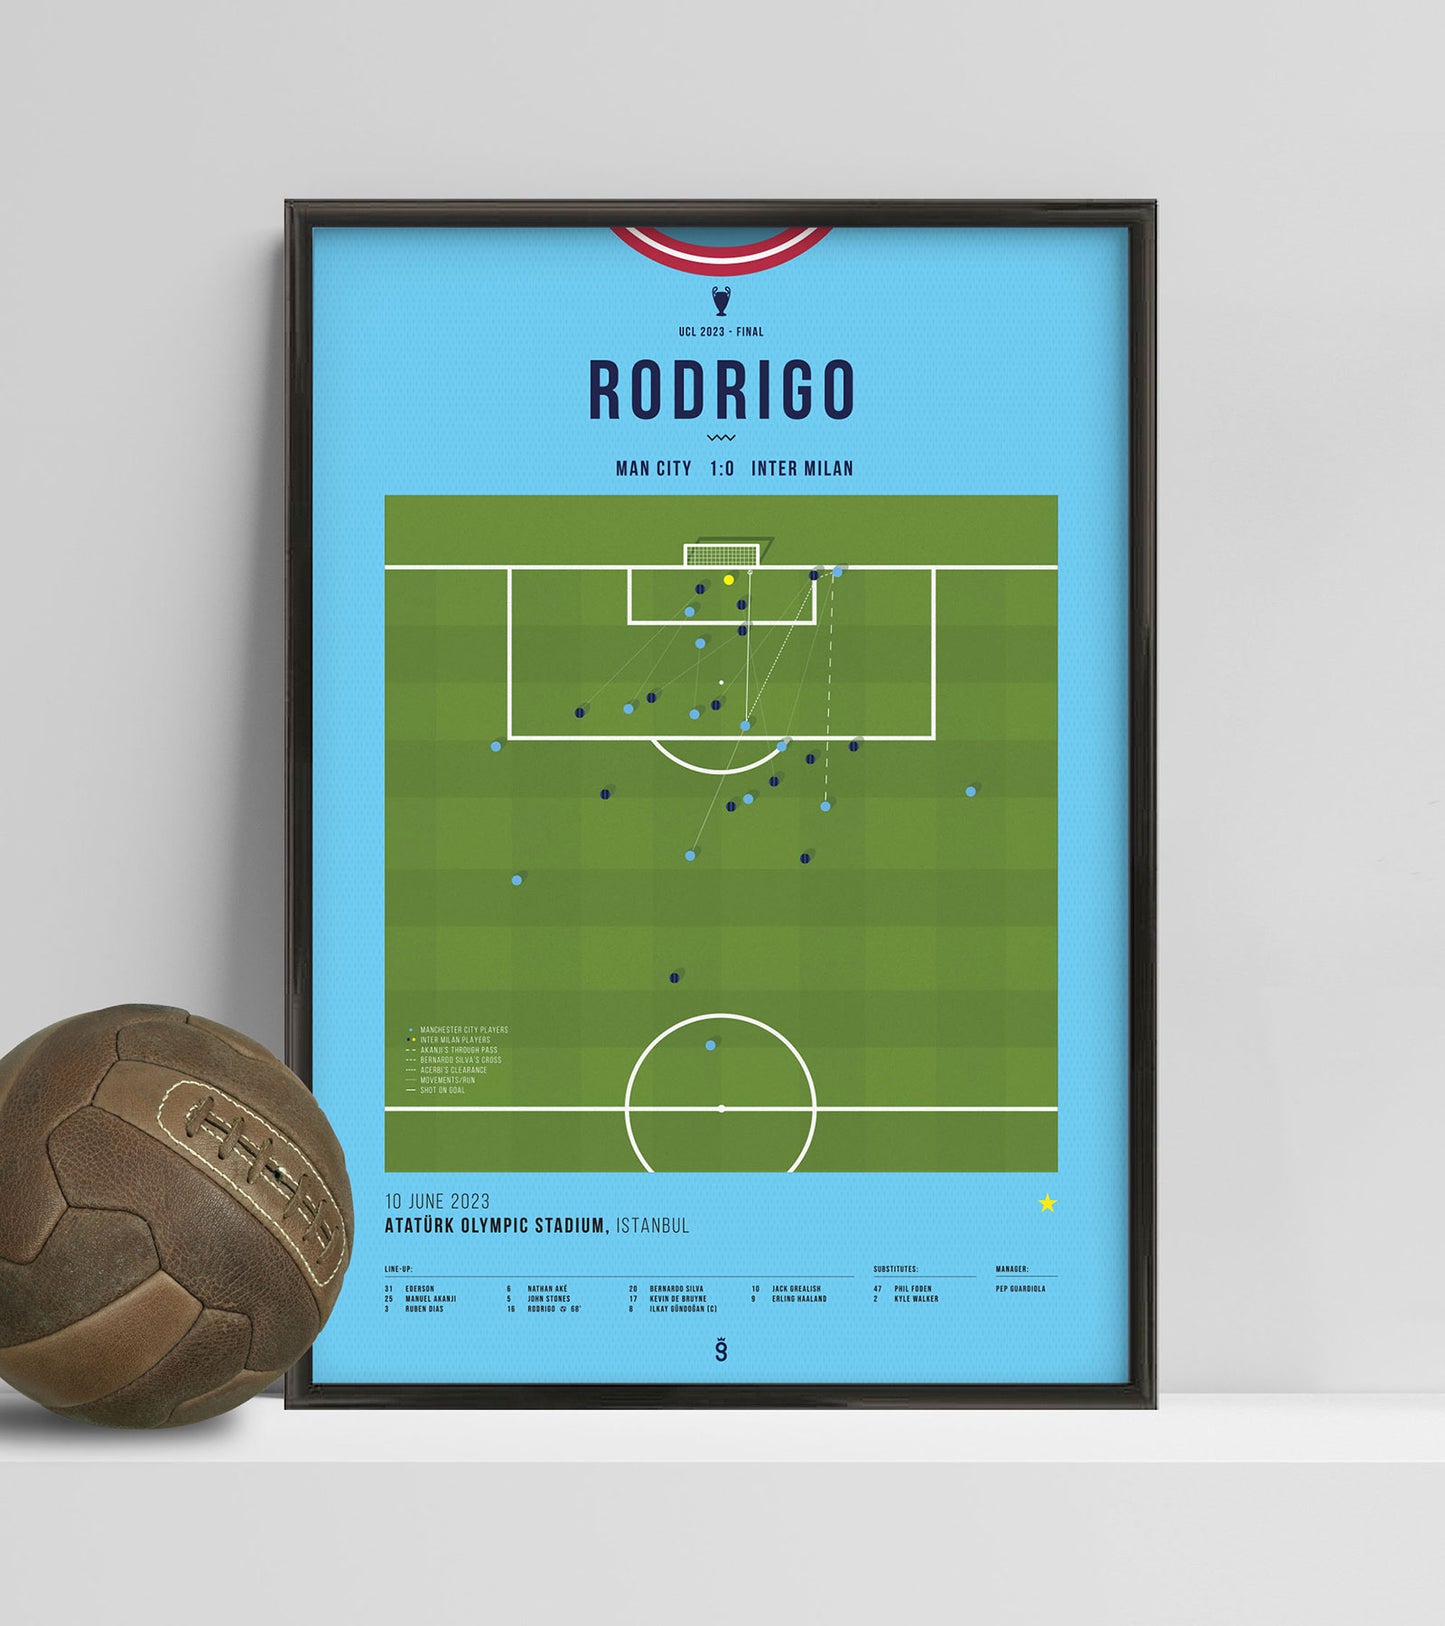 El gol de Rodrigo sella un histórico triunfo en la UCL para el Manchester City